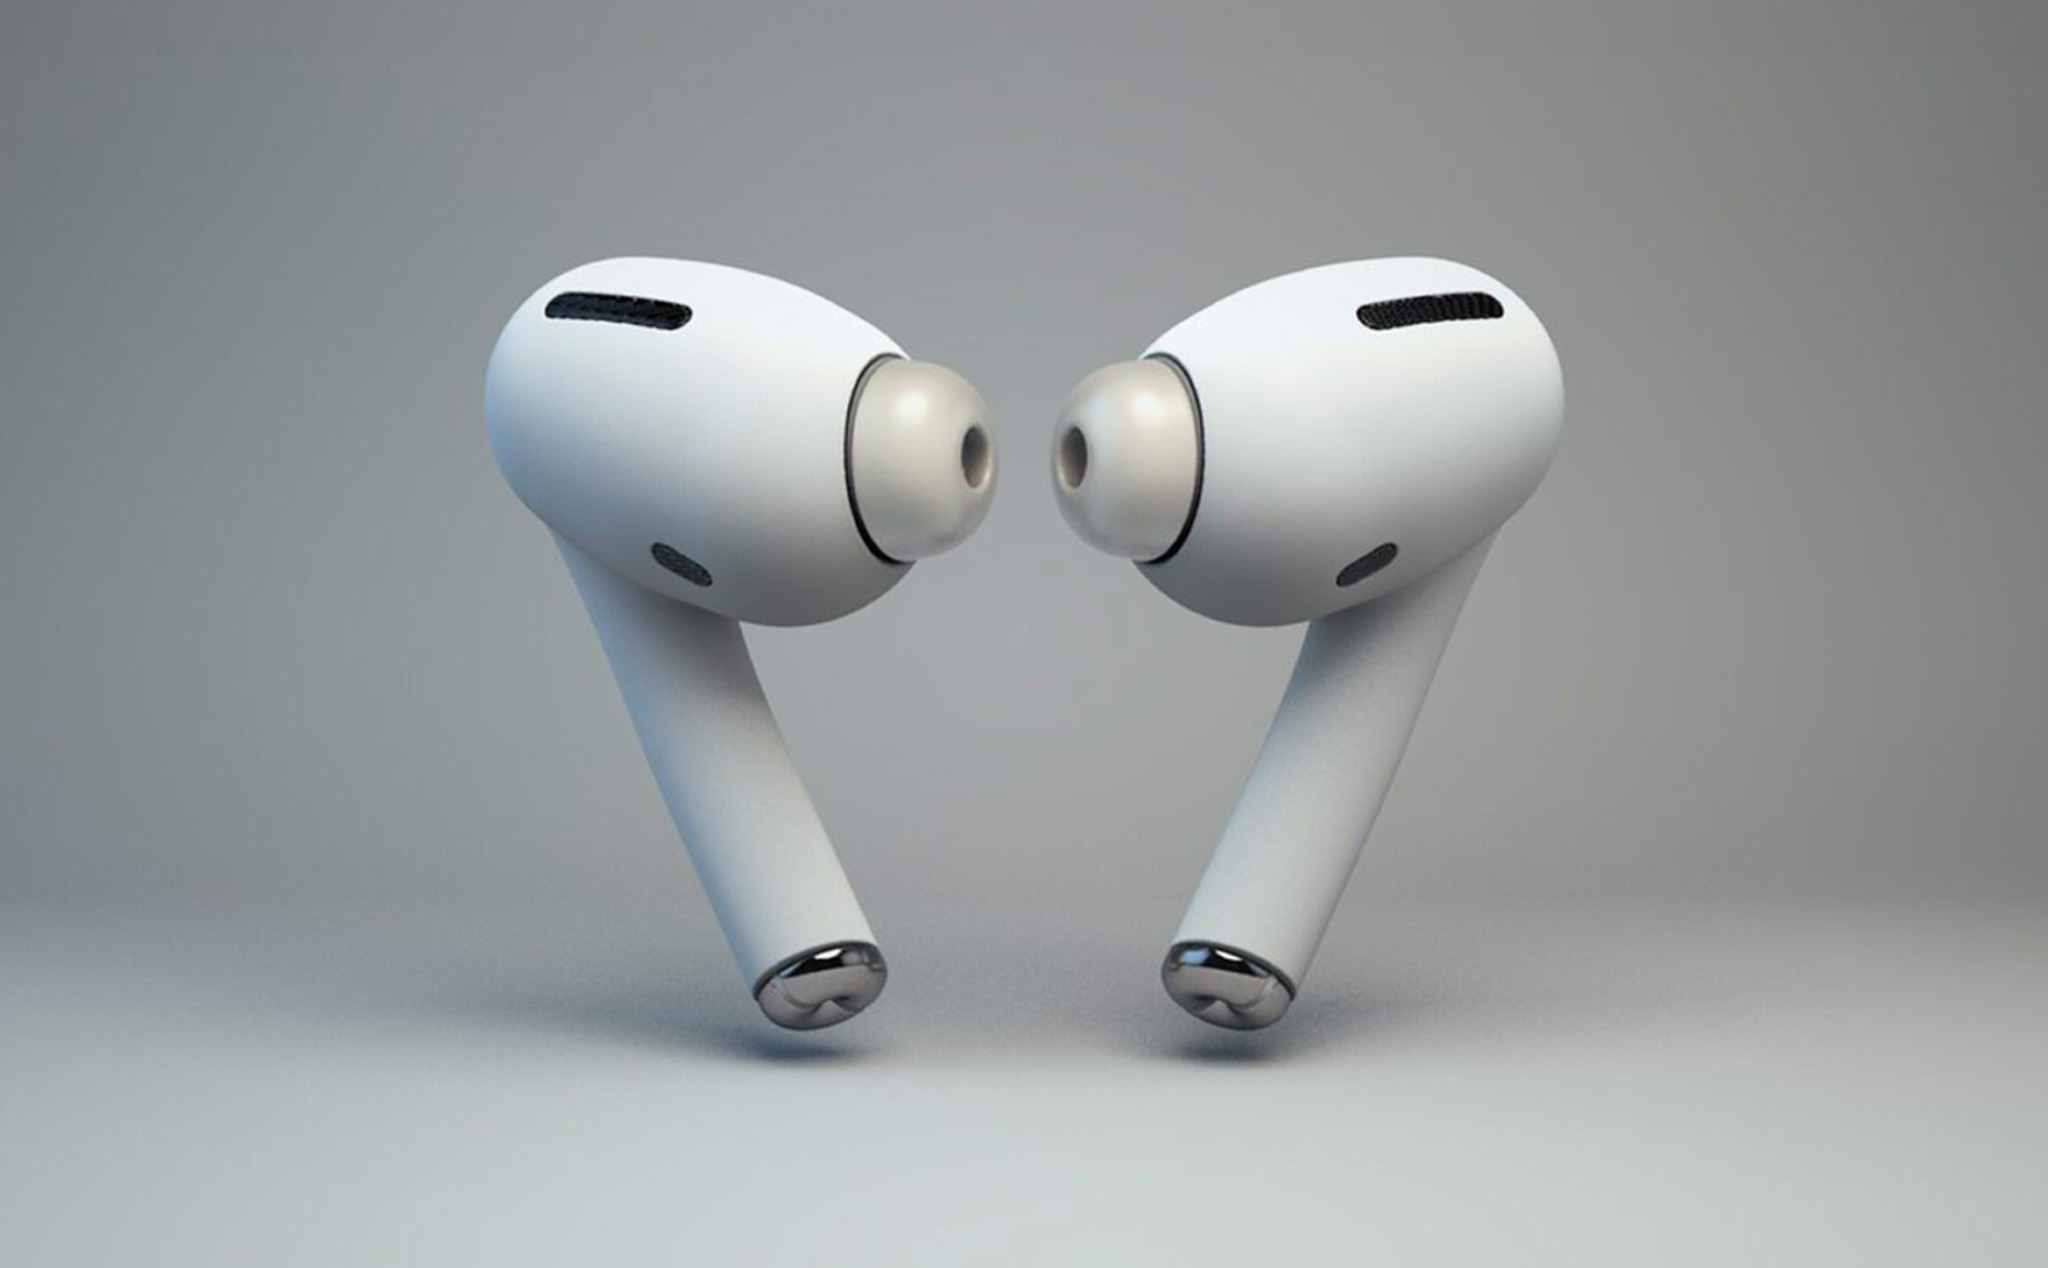 AirPods Pro mới dạng in ear, có chống ồn, giá 250$ sẽ ra mắt vào cuối tháng này?